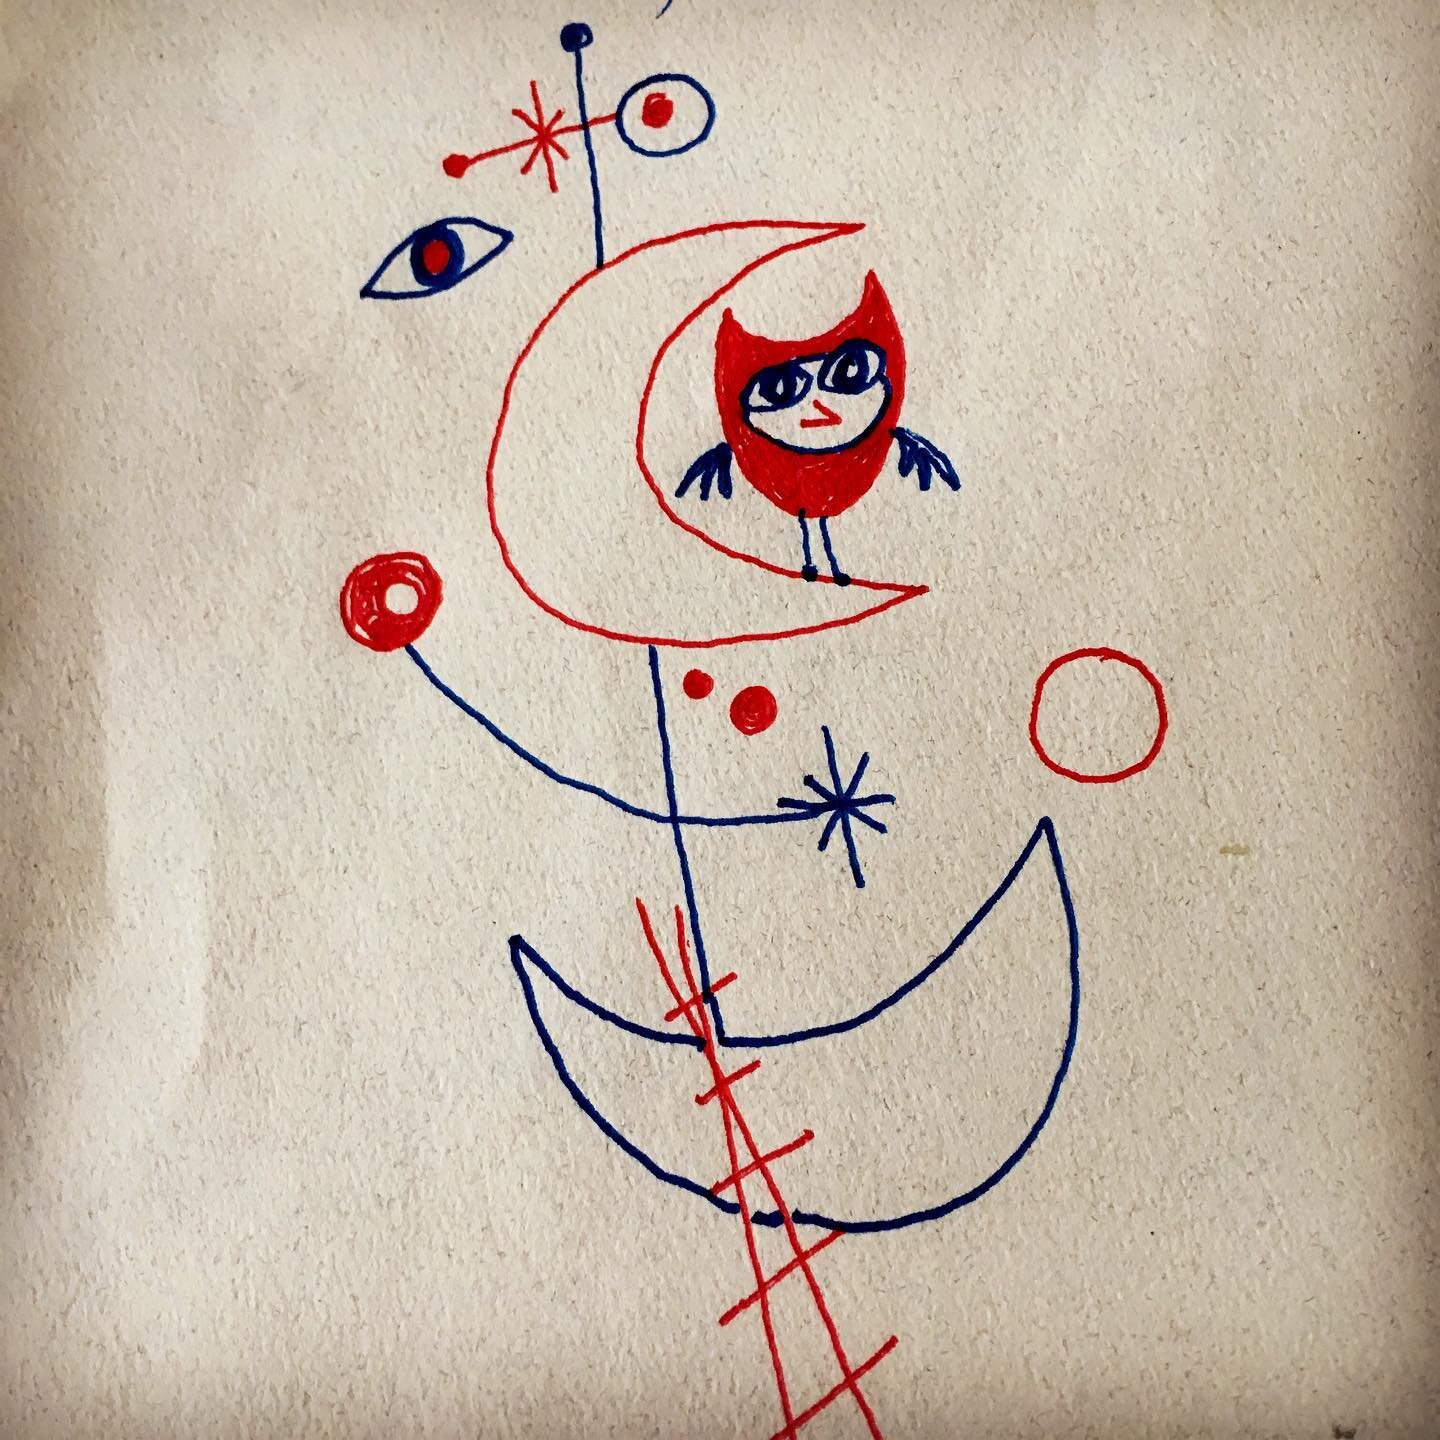 Owl and Gymnop&eacute;die
#owl #gymnopedie #redandblue #doodle #drawingoftheday #friends #love